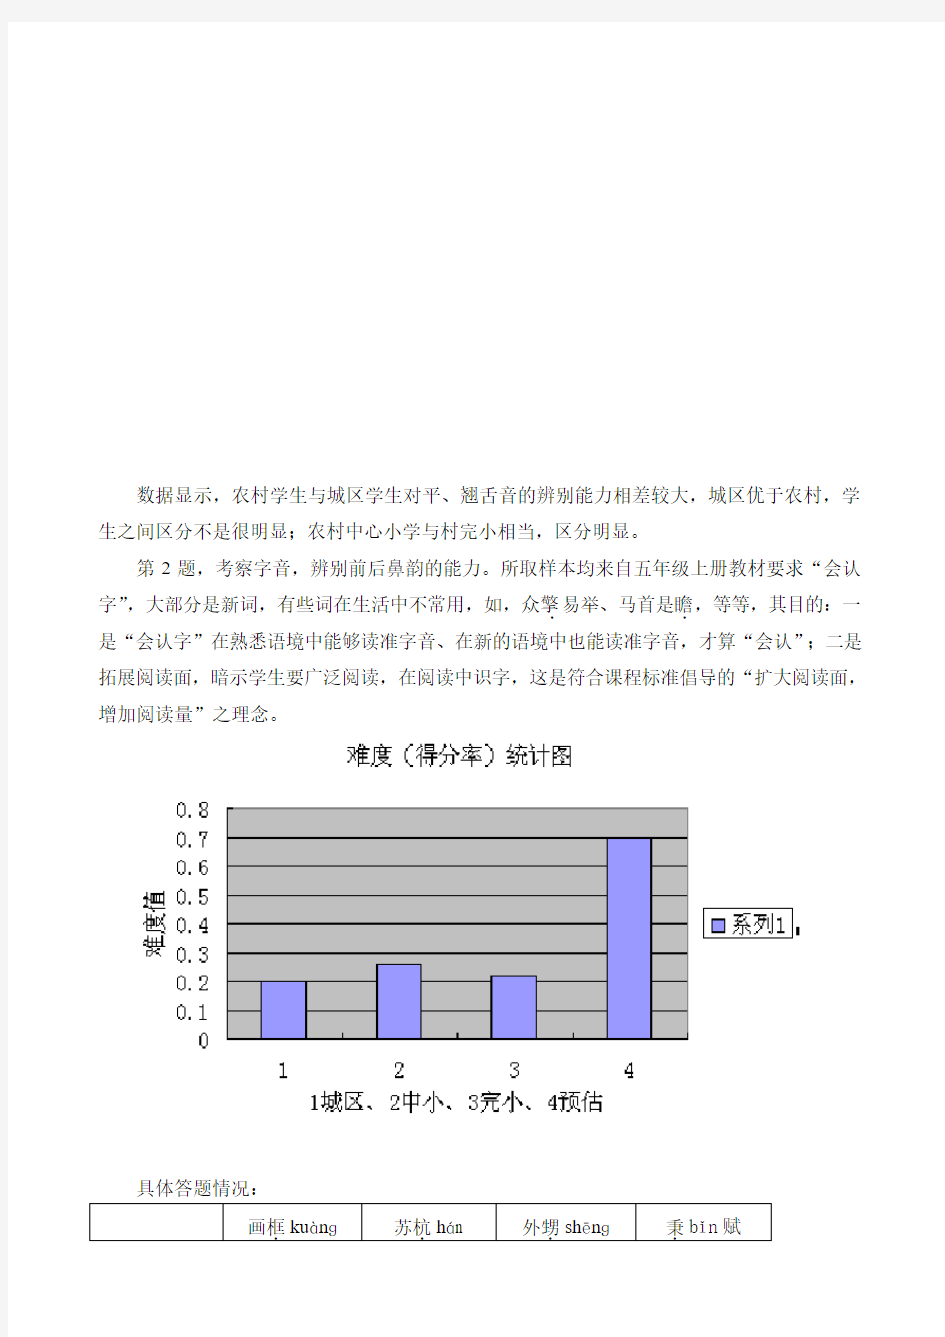 福建省2009年小学五年级语文上册测试实验卷质量分析报告